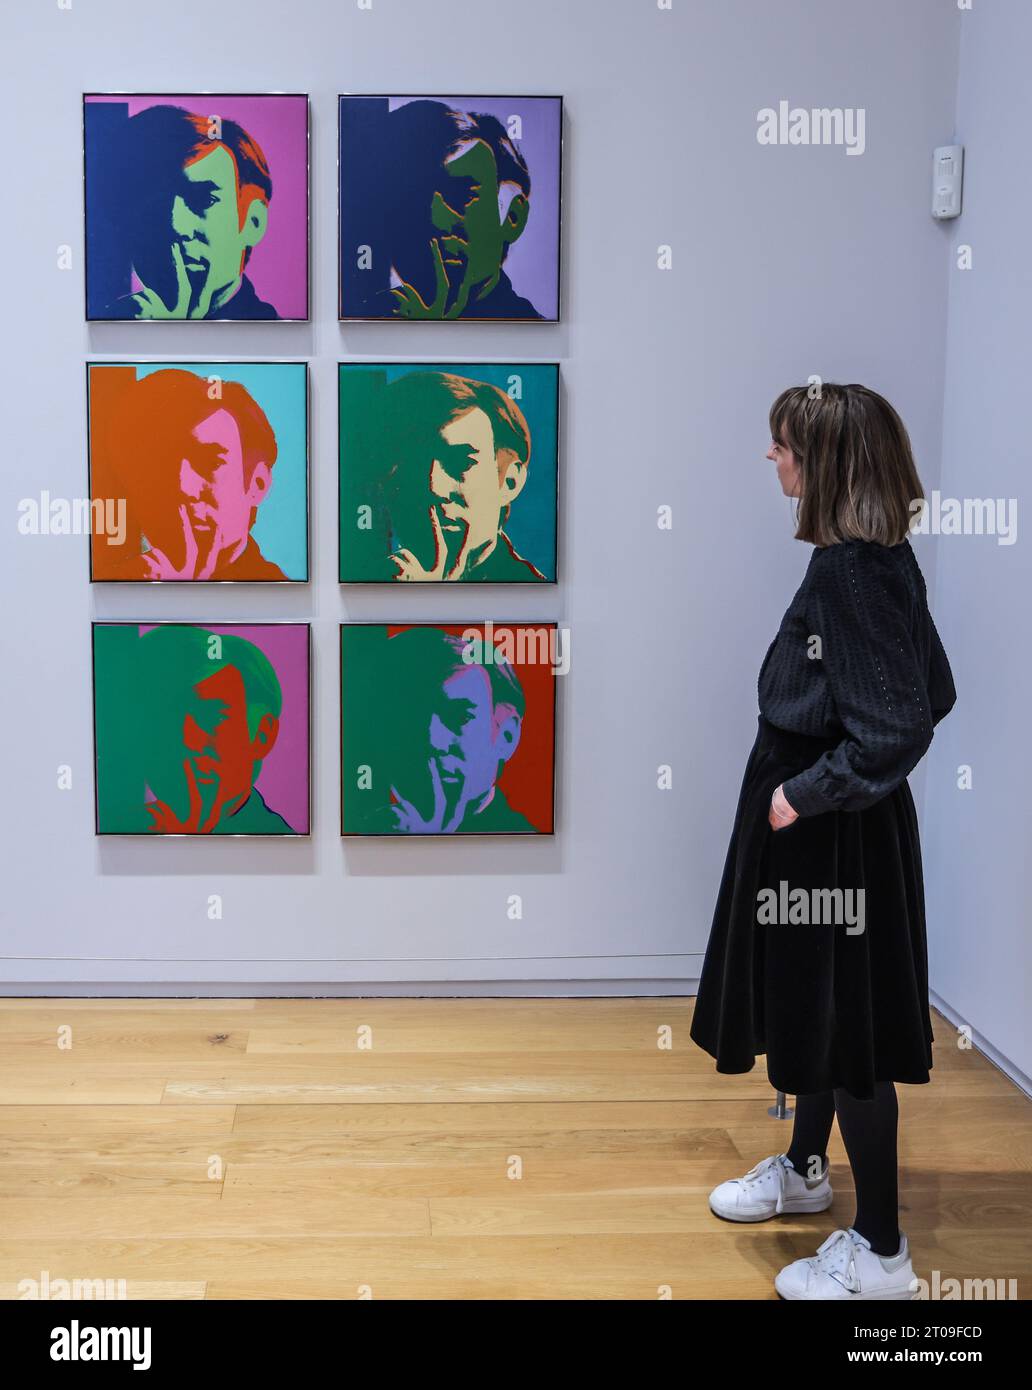 Dublin, Irlande. 05 octobre 2023. Autoportrait 1966 Hugh Lane Gallery et le conseil municipal de Dublin annoncent la plus grande exposition d'Andy Warhol en Irlande - la première à ouvrir en 25 ans. Une exposition unique de 250 peintures, gravures, photographies, films et installations d'Andy Warhol à la Hugh Lane Gallery, présentant l'extraordinaire gamme d'œuvres d'art produites par l'artiste au cours de quatre décennies. (6 octobre 2023 - 28 janvier 2024) crédit : Paul Quezada-Neiman/Alamy Live News Banque D'Images